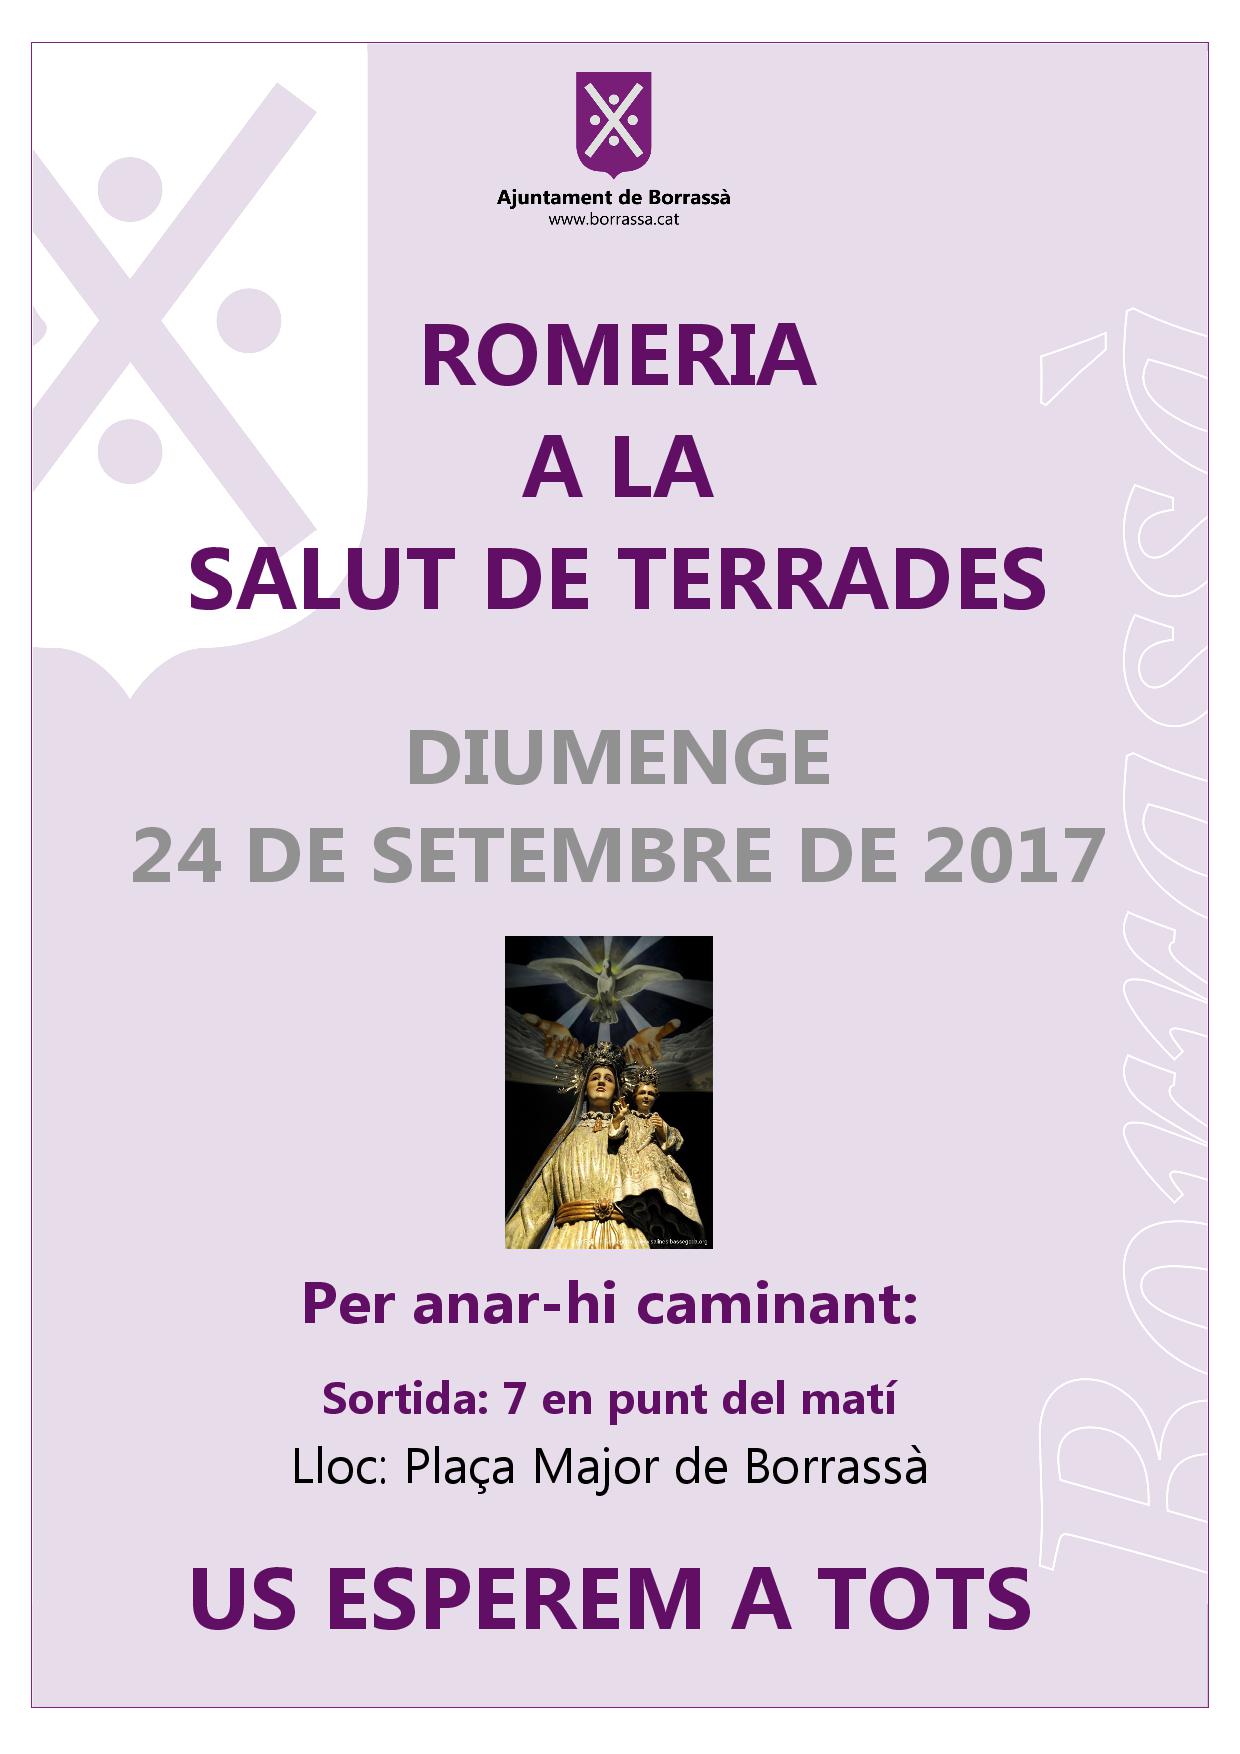 La Romeria a la Salut de Terrades es farà el diumenge 24 de setembre. Per anar-hi caminat, se sortirà a les 7 en punt del matí des de la plaça Major de Borrassà.